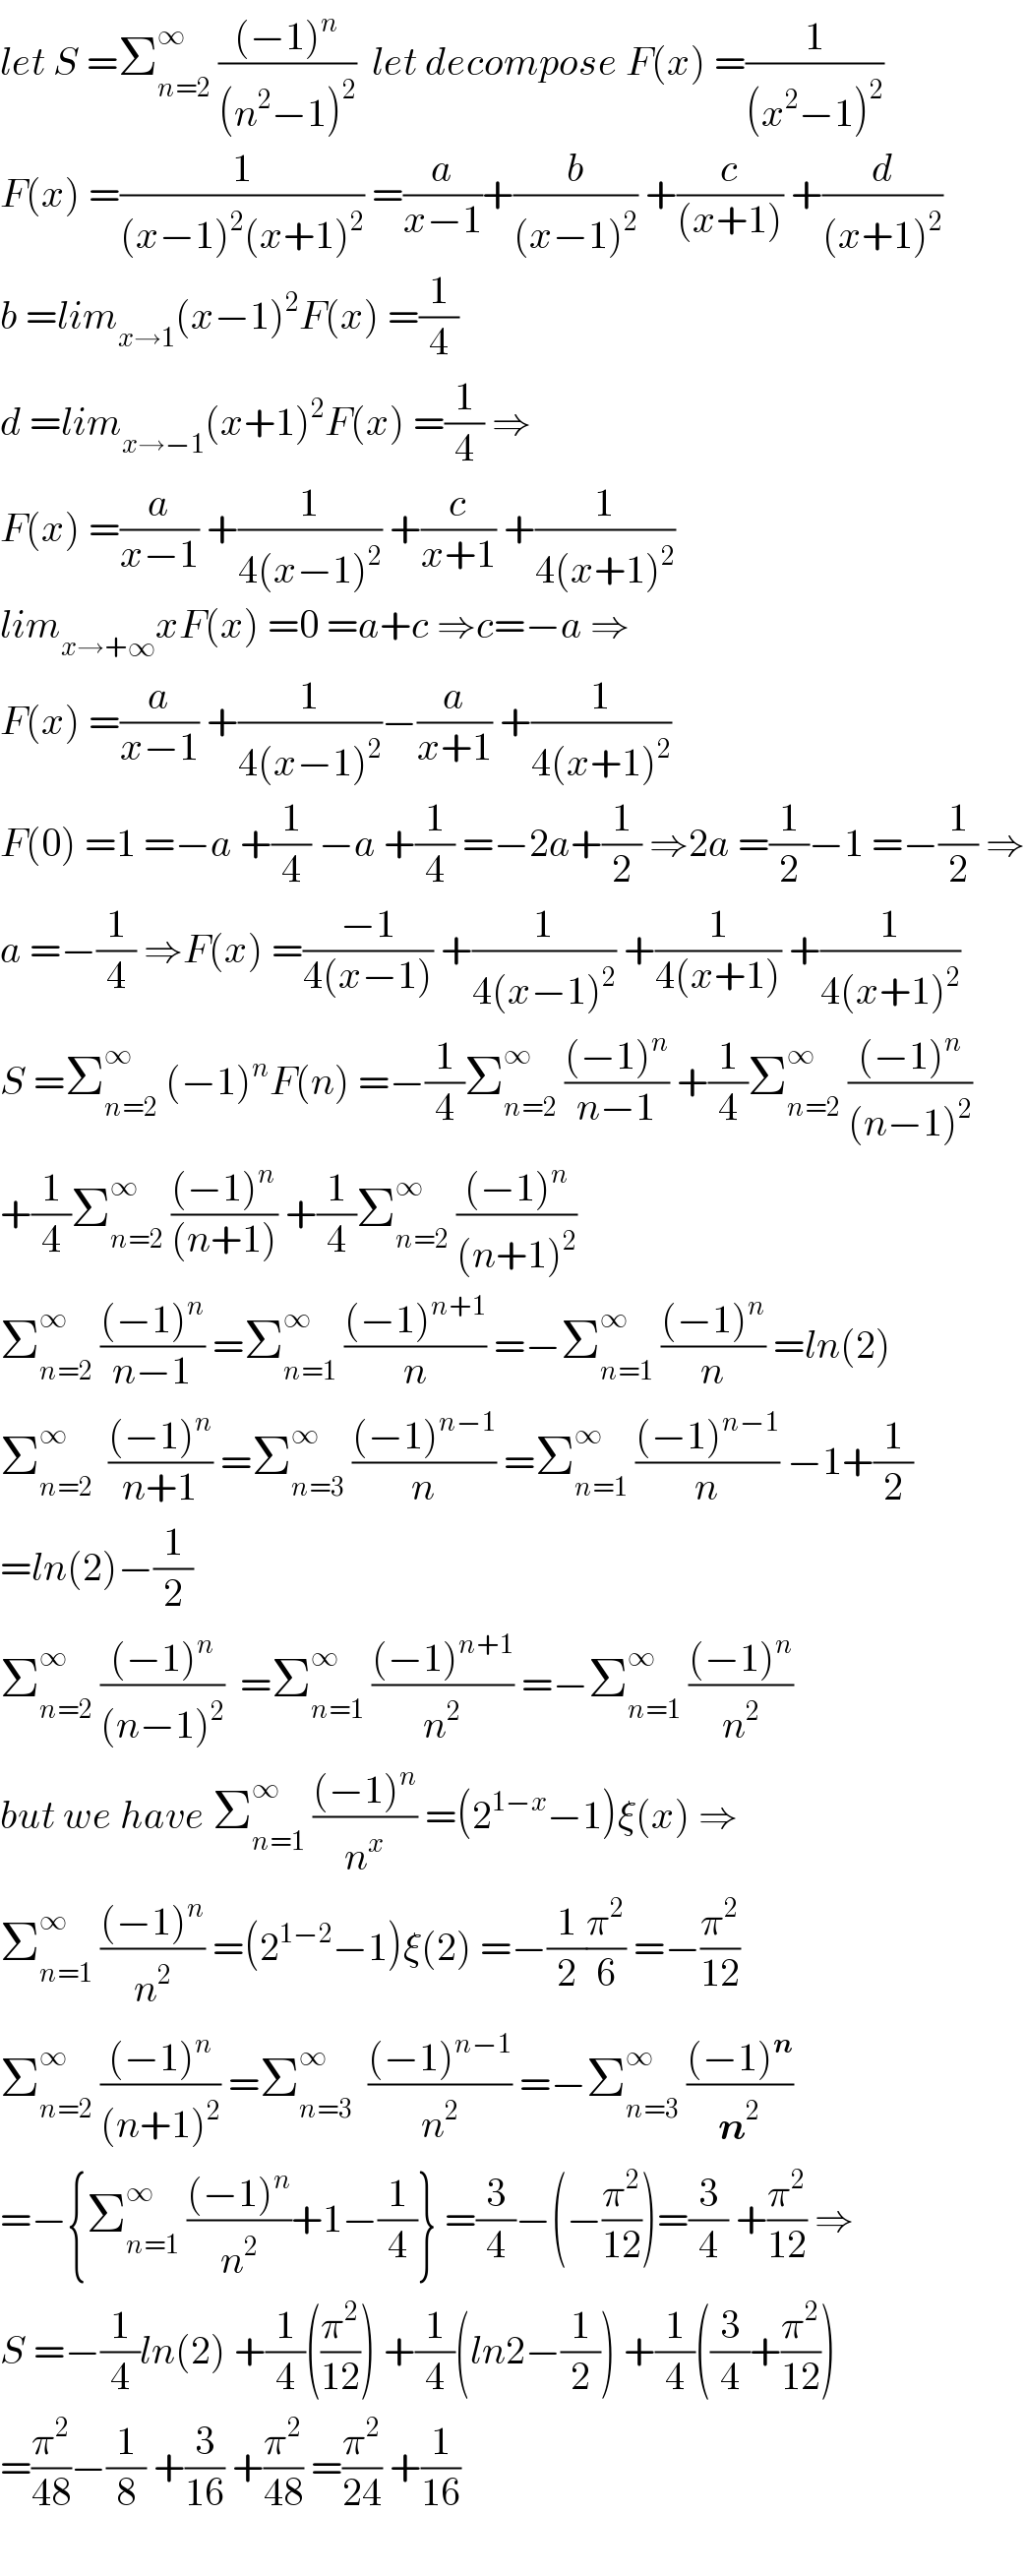 let S =Σ_(n=2) ^∞  (((−1)^n )/((n^2 −1)^2 ))  let decompose F(x) =(1/((x^2 −1)^2 ))  F(x) =(1/((x−1)^2 (x+1)^2 )) =(a/(x−1))+(b/((x−1)^2 )) +(c/((x+1))) +(d/((x+1)^2 ))  b =lim_(x→1) (x−1)^2 F(x) =(1/4)  d =lim_(x→−1) (x+1)^2 F(x) =(1/4) ⇒  F(x) =(a/(x−1)) +(1/(4(x−1)^2 )) +(c/(x+1)) +(1/(4(x+1)^2 ))  lim_(x→+∞) xF(x) =0 =a+c ⇒c=−a ⇒  F(x) =(a/(x−1)) +(1/(4(x−1)^2 ))−(a/(x+1)) +(1/(4(x+1)^2 ))  F(0) =1 =−a +(1/4) −a +(1/4) =−2a+(1/2) ⇒2a =(1/2)−1 =−(1/2) ⇒  a =−(1/4) ⇒F(x) =((−1)/(4(x−1))) +(1/(4(x−1)^2 )) +(1/(4(x+1))) +(1/(4(x+1)^2 ))  S =Σ_(n=2) ^∞  (−1)^n F(n) =−(1/4)Σ_(n=2) ^∞  (((−1)^n )/(n−1)) +(1/4)Σ_(n=2) ^∞  (((−1)^n )/((n−1)^2 ))  +(1/4)Σ_(n=2) ^∞  (((−1)^n )/((n+1))) +(1/4)Σ_(n=2) ^∞  (((−1)^n )/((n+1)^2 ))  Σ_(n=2) ^∞  (((−1)^n )/(n−1)) =Σ_(n=1) ^∞  (((−1)^(n+1) )/n) =−Σ_(n=1) ^∞  (((−1)^n )/n) =ln(2)  Σ_(n=2) ^∞   (((−1)^n )/(n+1)) =Σ_(n=3) ^∞  (((−1)^(n−1) )/n) =Σ_(n=1) ^∞  (((−1)^(n−1) )/n) −1+(1/2)  =ln(2)−(1/2)  Σ_(n=2) ^∞  (((−1)^n )/((n−1)^2 ))  =Σ_(n=1) ^∞  (((−1)^(n+1) )/n^2 ) =−Σ_(n=1) ^∞  (((−1)^n )/n^2 )  but we have Σ_(n=1) ^∞  (((−1)^n )/n^x ) =(2^(1−x) −1)ξ(x) ⇒  Σ_(n=1) ^∞  (((−1)^n )/n^2 ) =(2^(1−2) −1)ξ(2) =−(1/2)(π^2 /6) =−(π^2 /(12))  Σ_(n=2) ^∞  (((−1)^n )/((n+1)^2 )) =Σ_(n=3) ^∞   (((−1)^(n−1) )/n^2 ) =−Σ_(n=3) ^∞  (((−1)^n )/n^2 )  =−{Σ_(n=1) ^∞  (((−1)^n )/n^2 )+1−(1/4)} =(3/4)−(−(π^2 /(12)))=(3/4) +(π^2 /(12)) ⇒  S =−(1/4)ln(2) +(1/4)((π^2 /(12))) +(1/4)(ln2−(1/2)) +(1/4)((3/4)+(π^2 /(12)))  =(π^2 /(48))−(1/8) +(3/(16)) +(π^2 /(48)) =(π^2 /(24)) +(1/(16))    